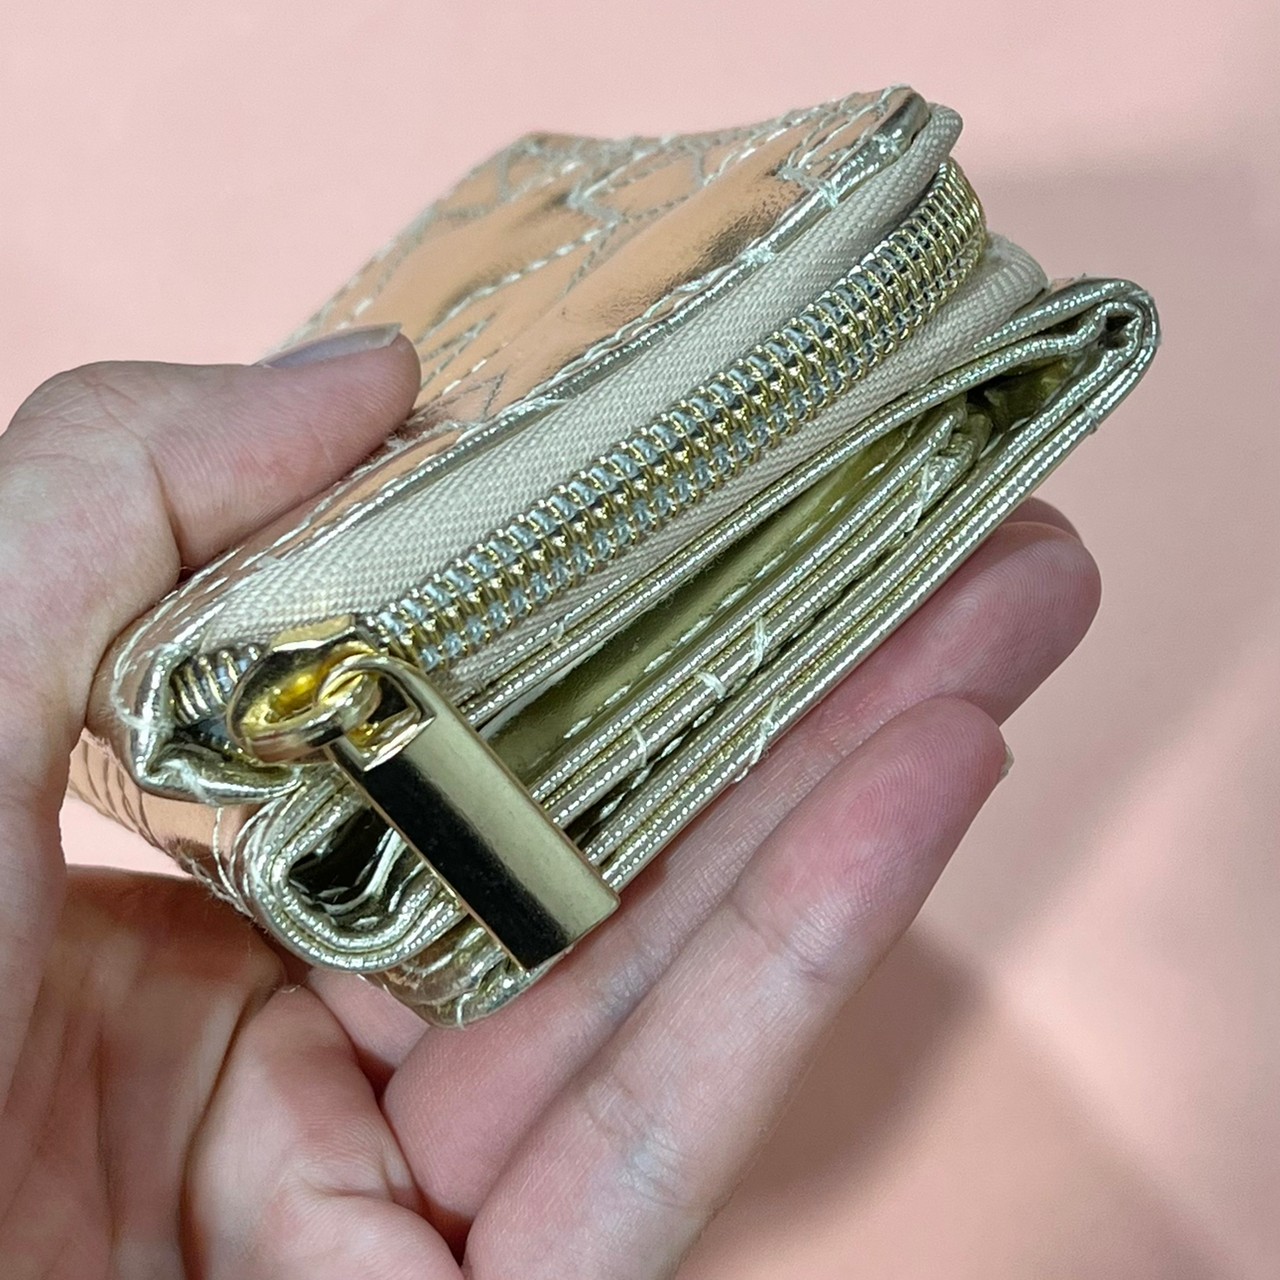 スターキルティングミニ財布のファスナー部分がわかる画像